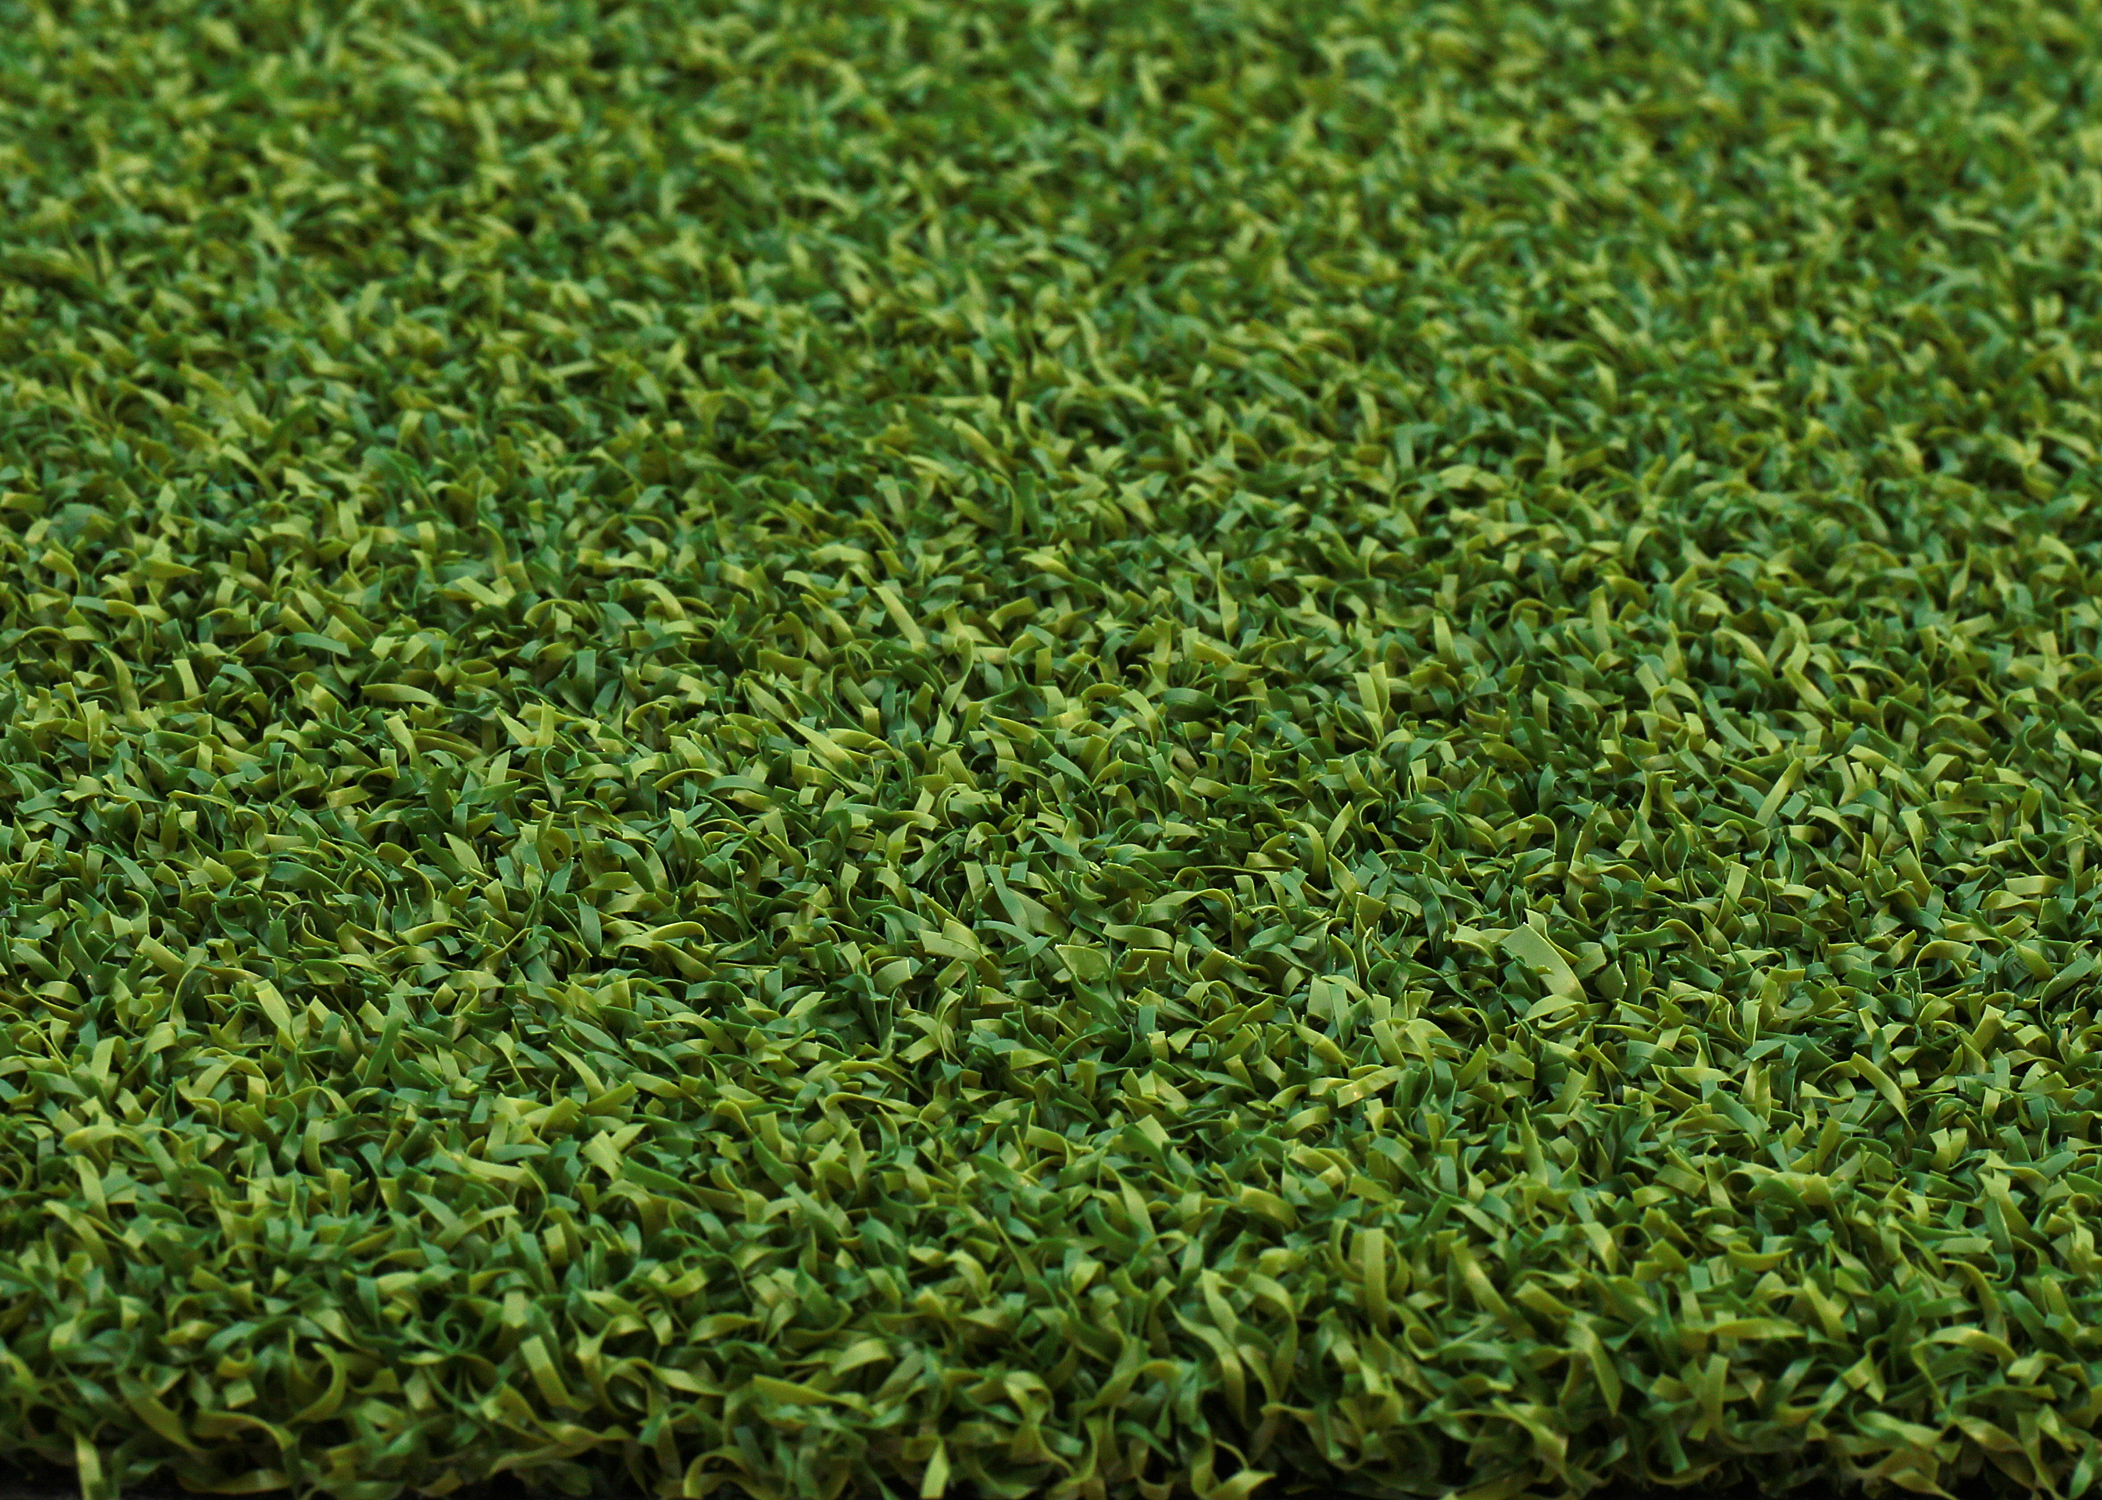 ホームゴルフ用の砂なしのアーミーグリーンパッティンググリーン